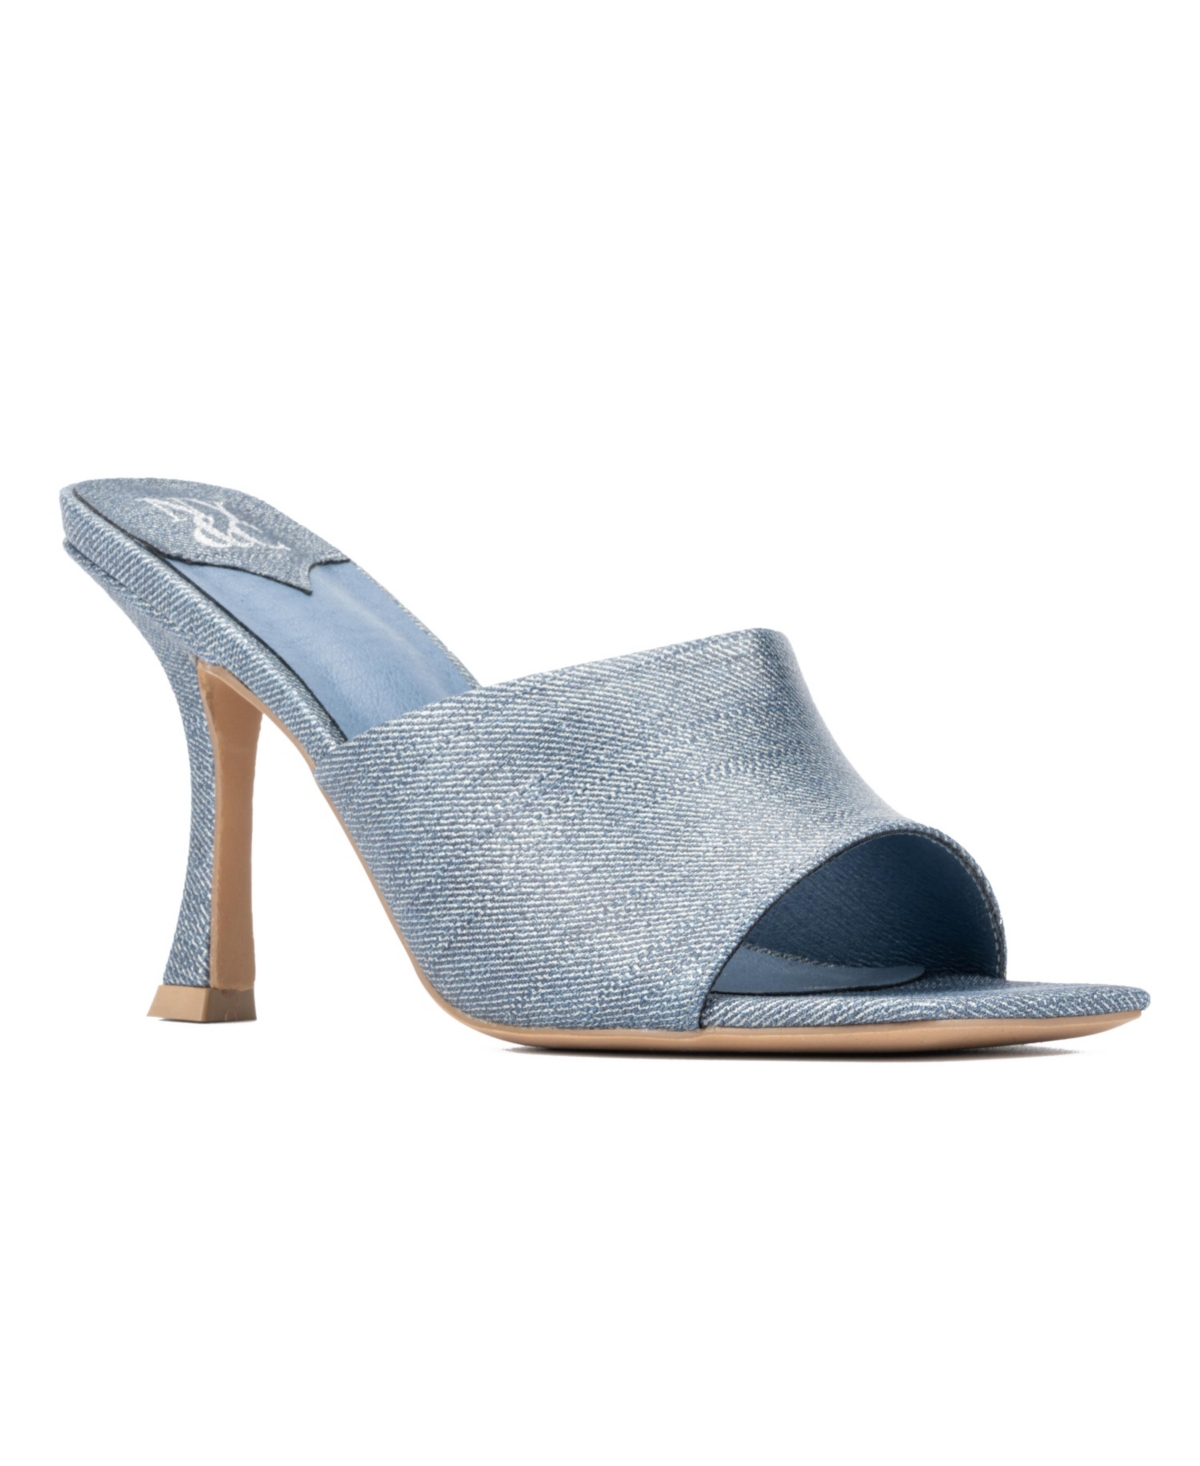 Delara Women's Heel Slide Sandal - Blue